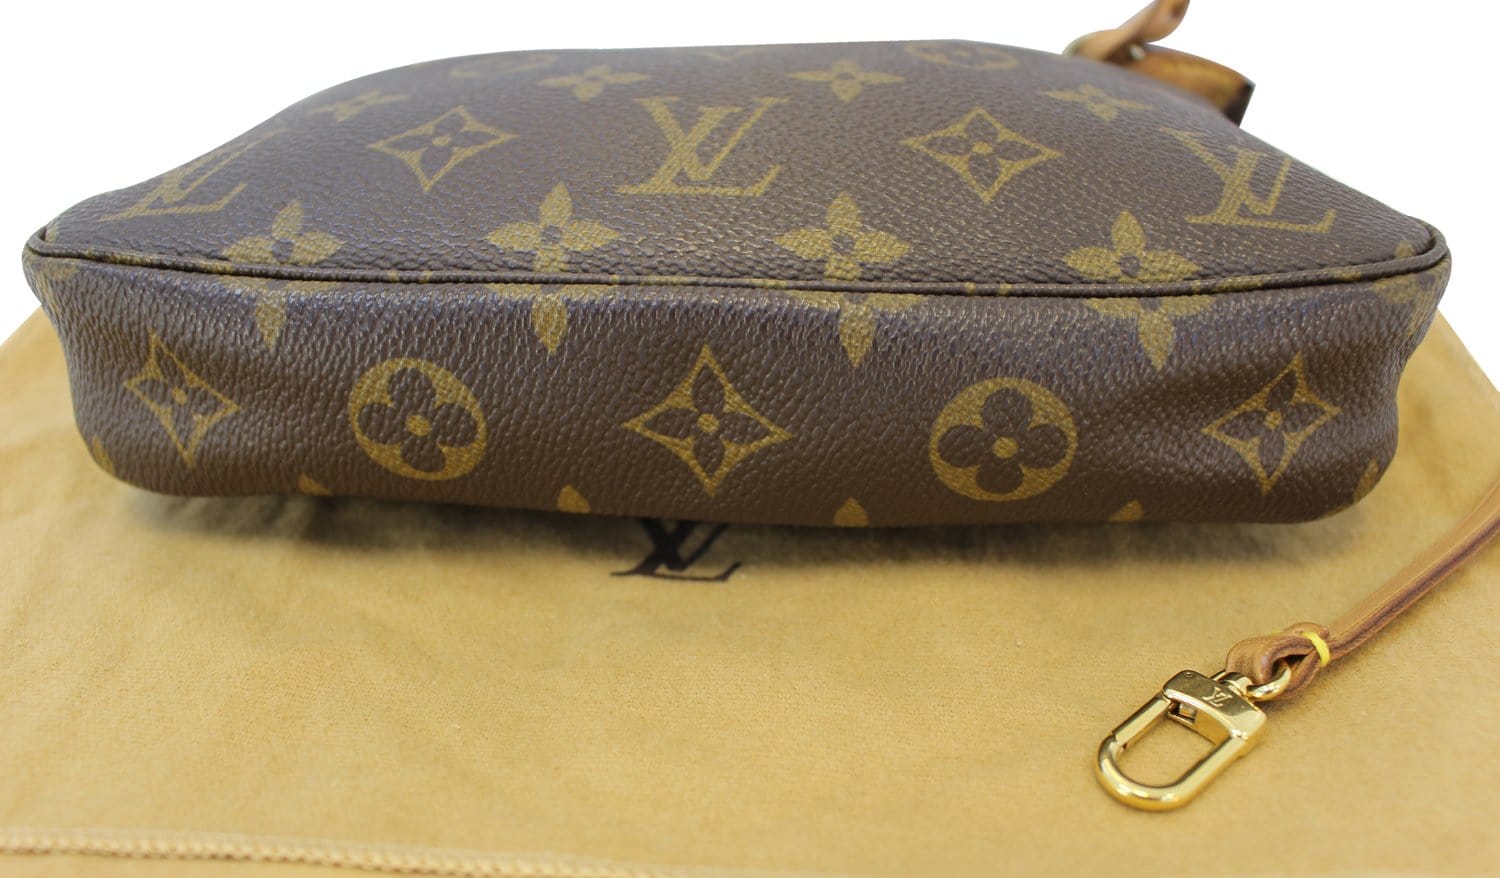 Louis-Vuitton-Monogram-Rivet-Pochette-Accessoires-Pouch-M40141